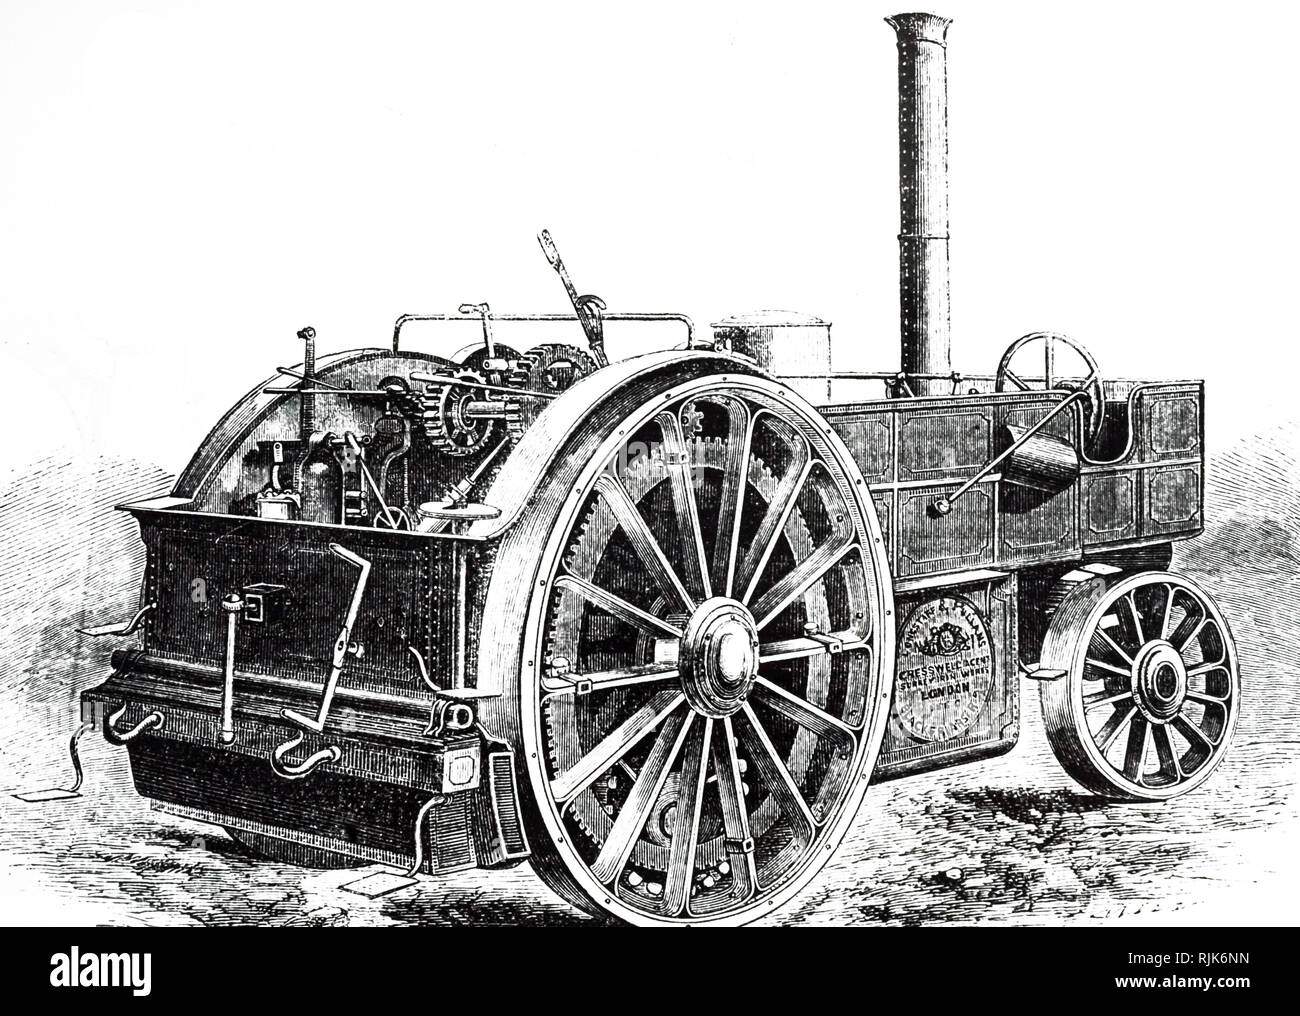 Ein kupferstich mit der Darstellung eines Traction Engine von Longstaff & Pullen. Der einzigartige Konstruktion, weil ein separates Chassis und einem zweiten unabhängigen Rahmen durchgeführt, um die Antriebsachse und Getriebe. Extra Grip wurde durch Senkung zusätzliche Antriebsräder möglich. Vom 19. Jahrhundert Stockfoto